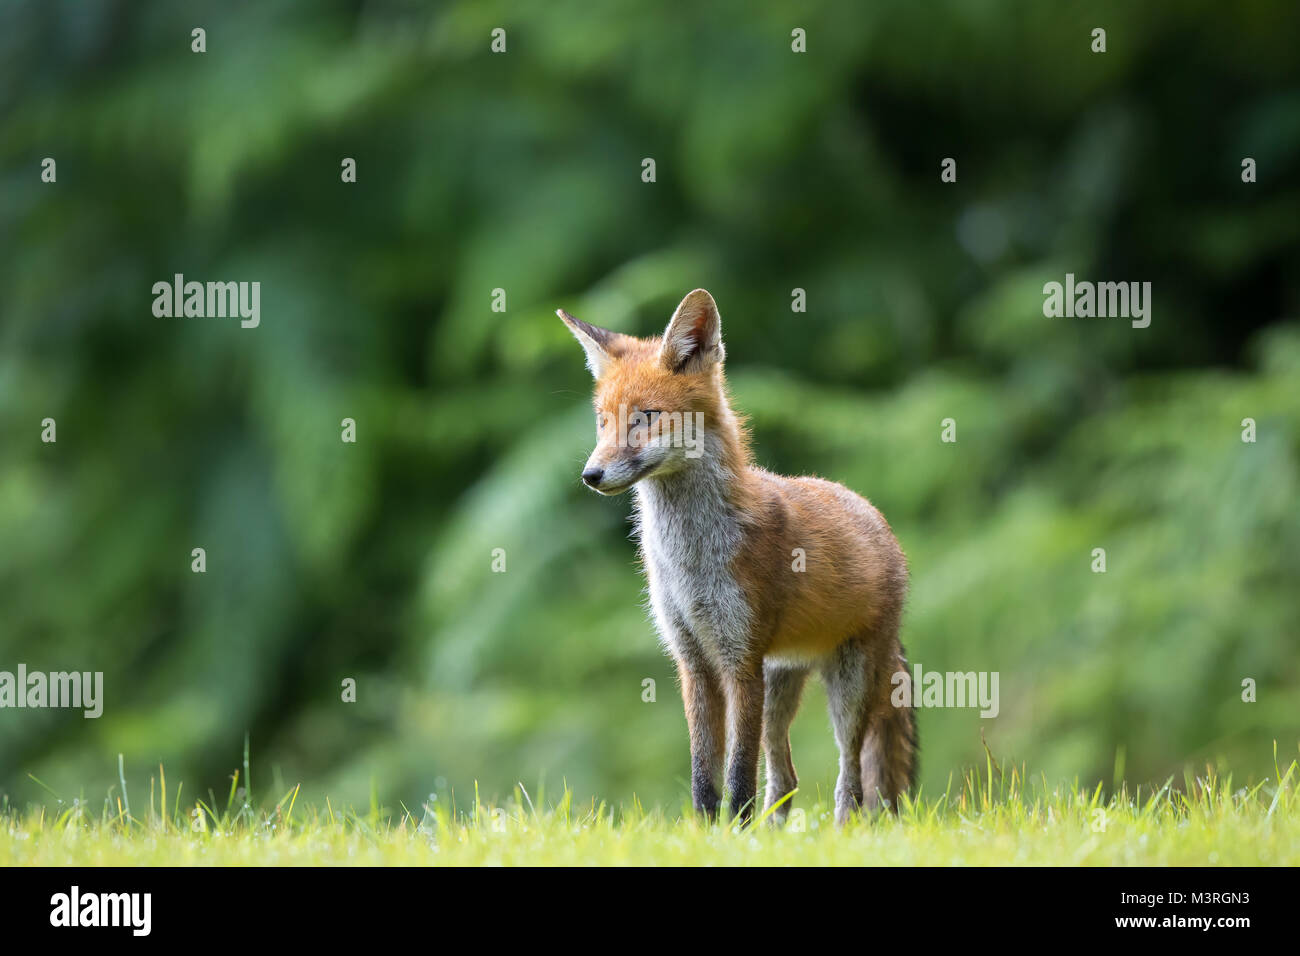 Dettaglio, vista frontale primo piano di giovane volpe rossa britannica (Vulpes vulpes) in piedi isolati su erba estiva con sfondo boscoso. Volpi rosse selvatiche di paese. Foto Stock